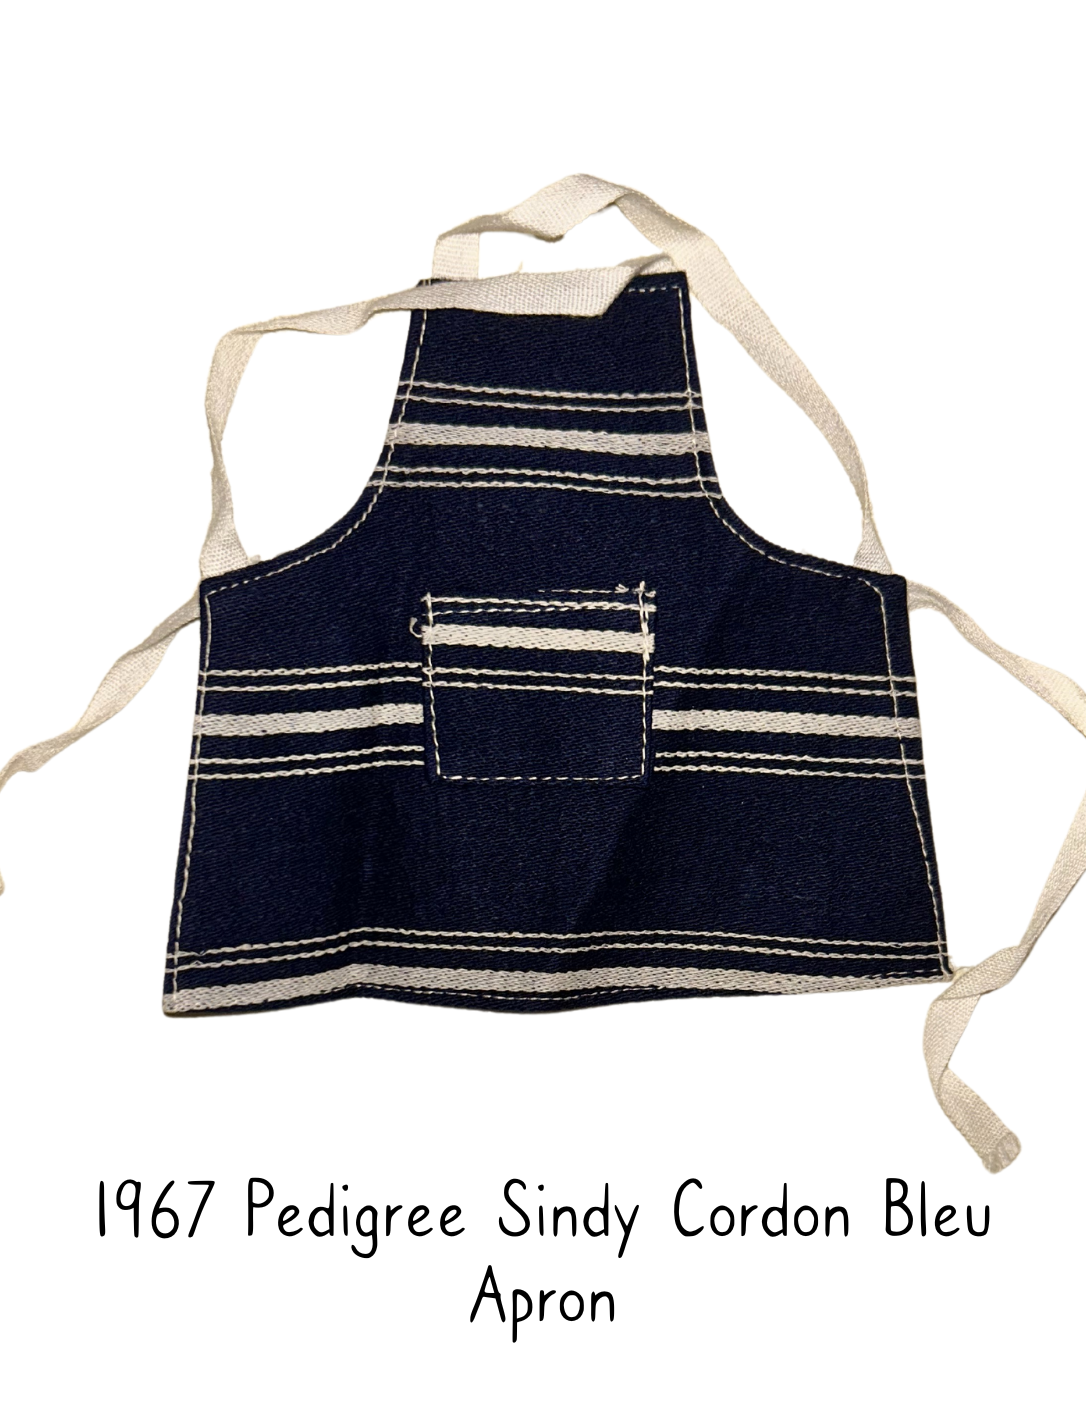 1967 Pedigree Sindy Fashion Doll Cordon Bleu Apron